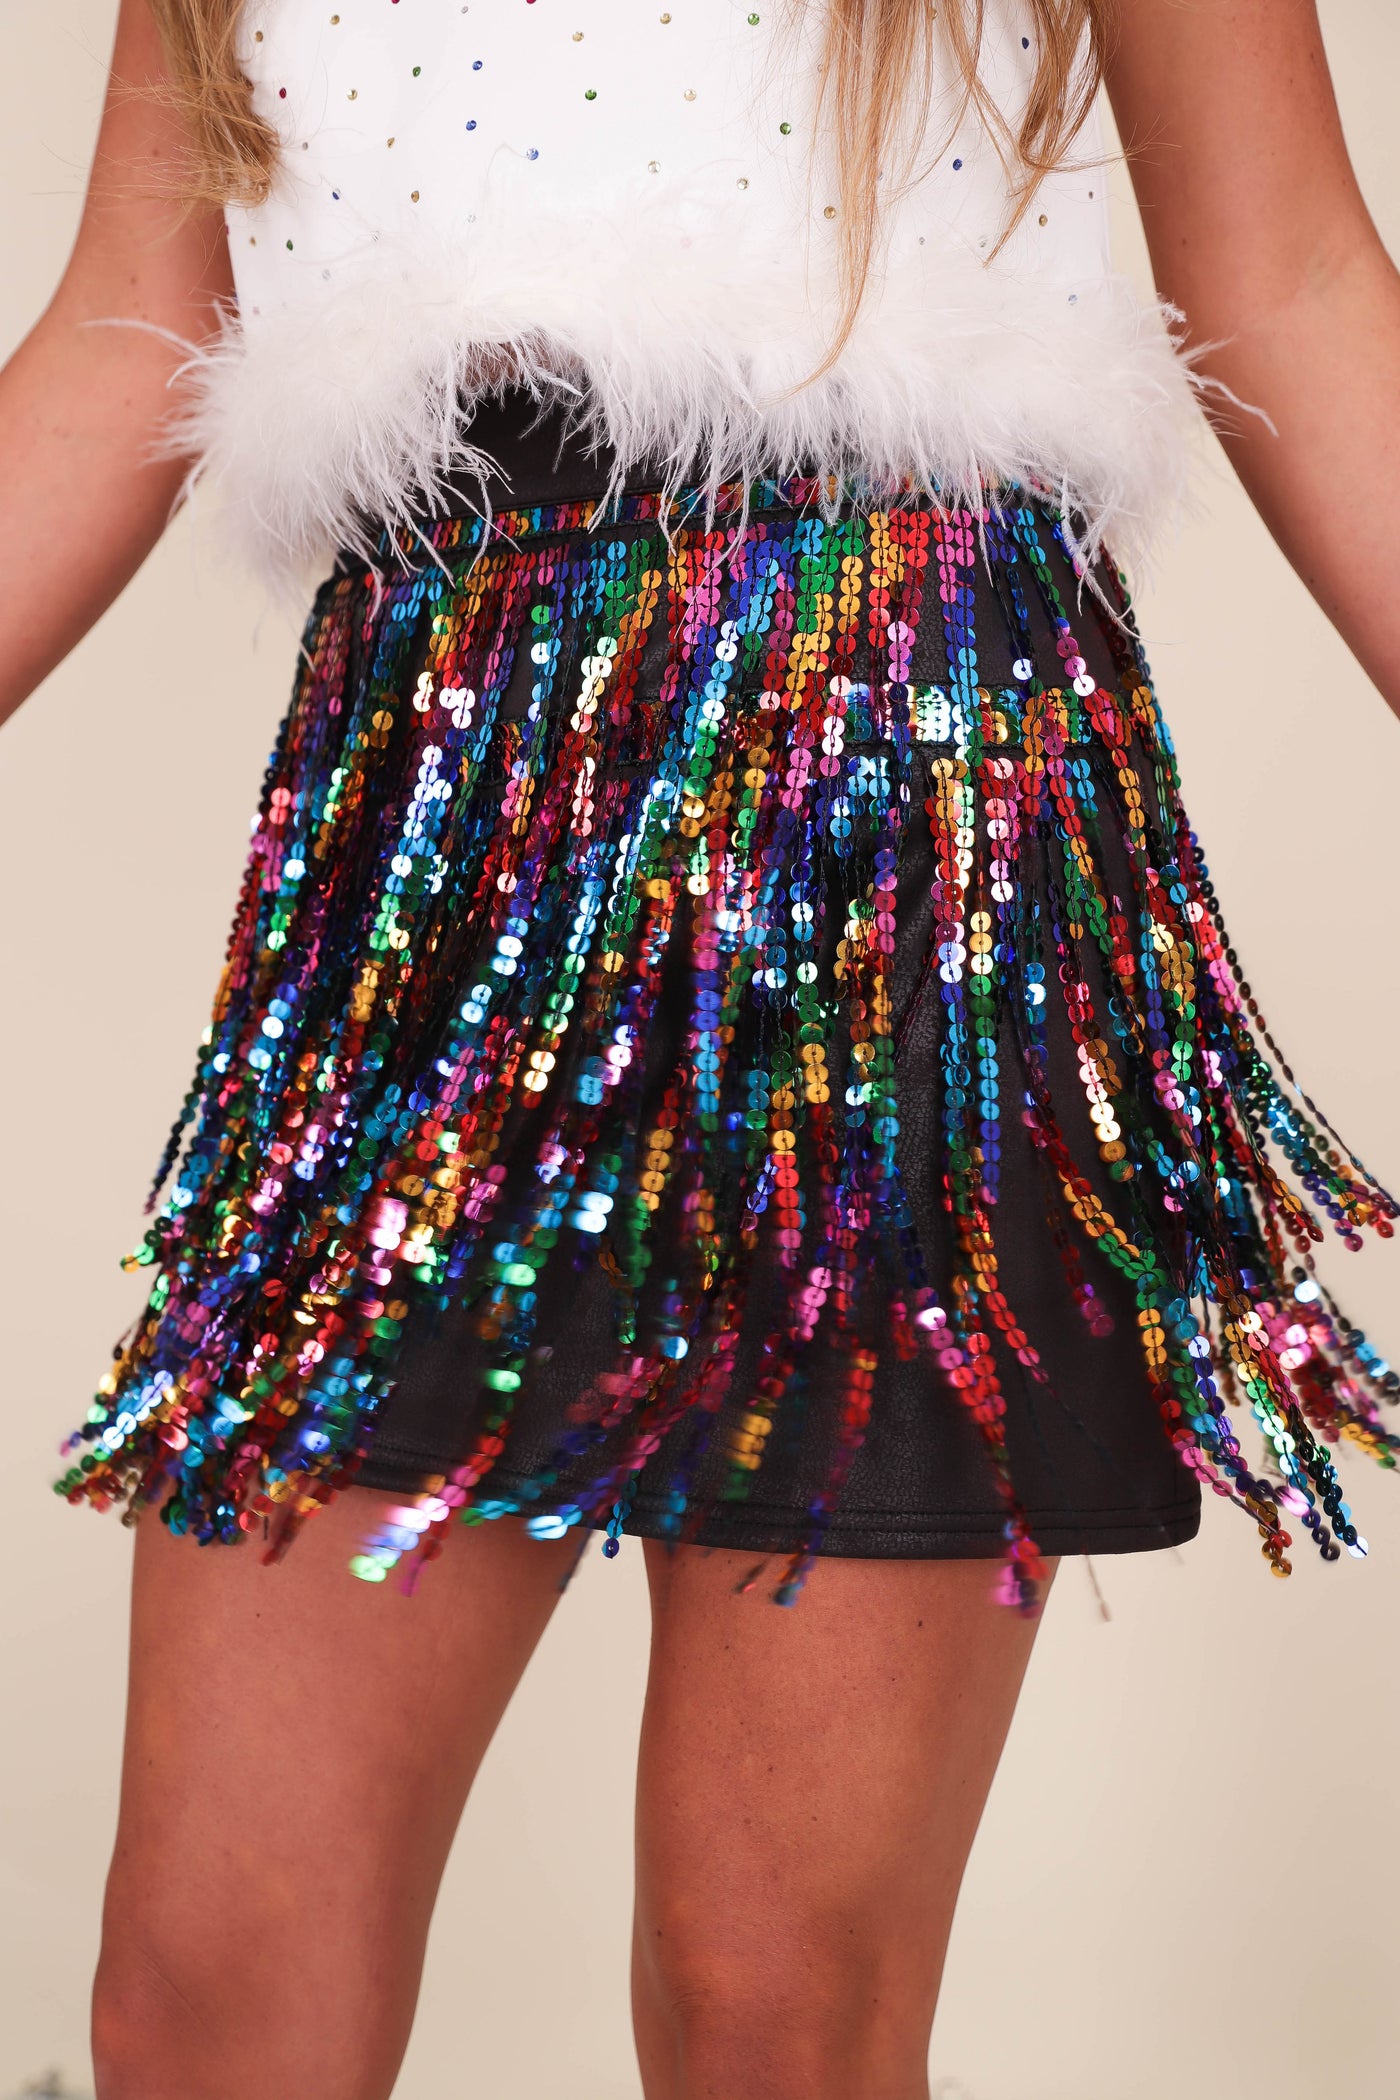 Women's Mini Skirt- Women's Sequin Fringe Skirt- Women's Sequin Rainbow Skirt